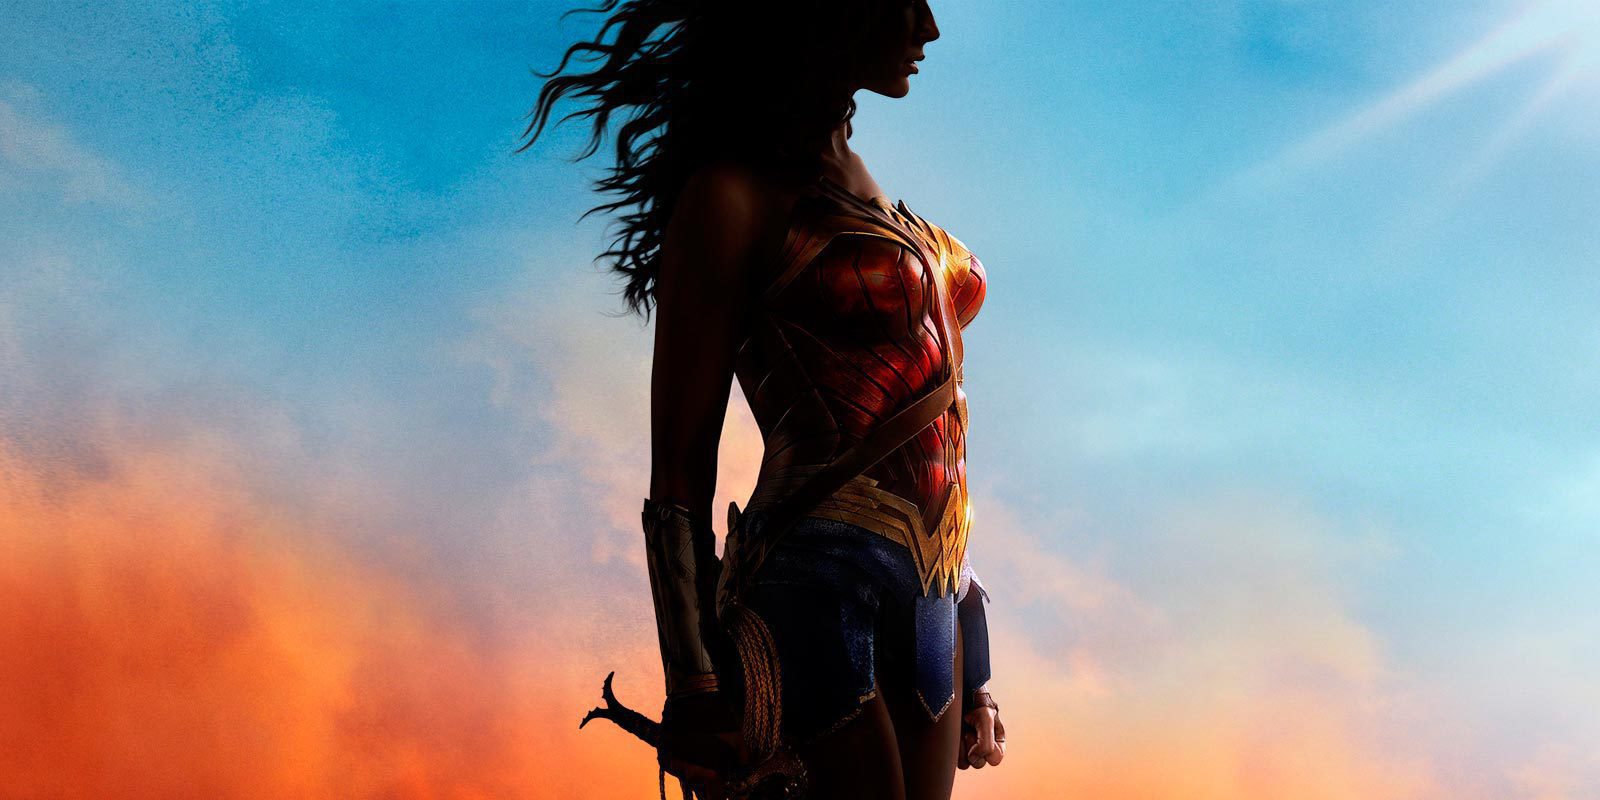 Ares sería el villano de 'Wonder Woman' según nuevos juguetes de la película